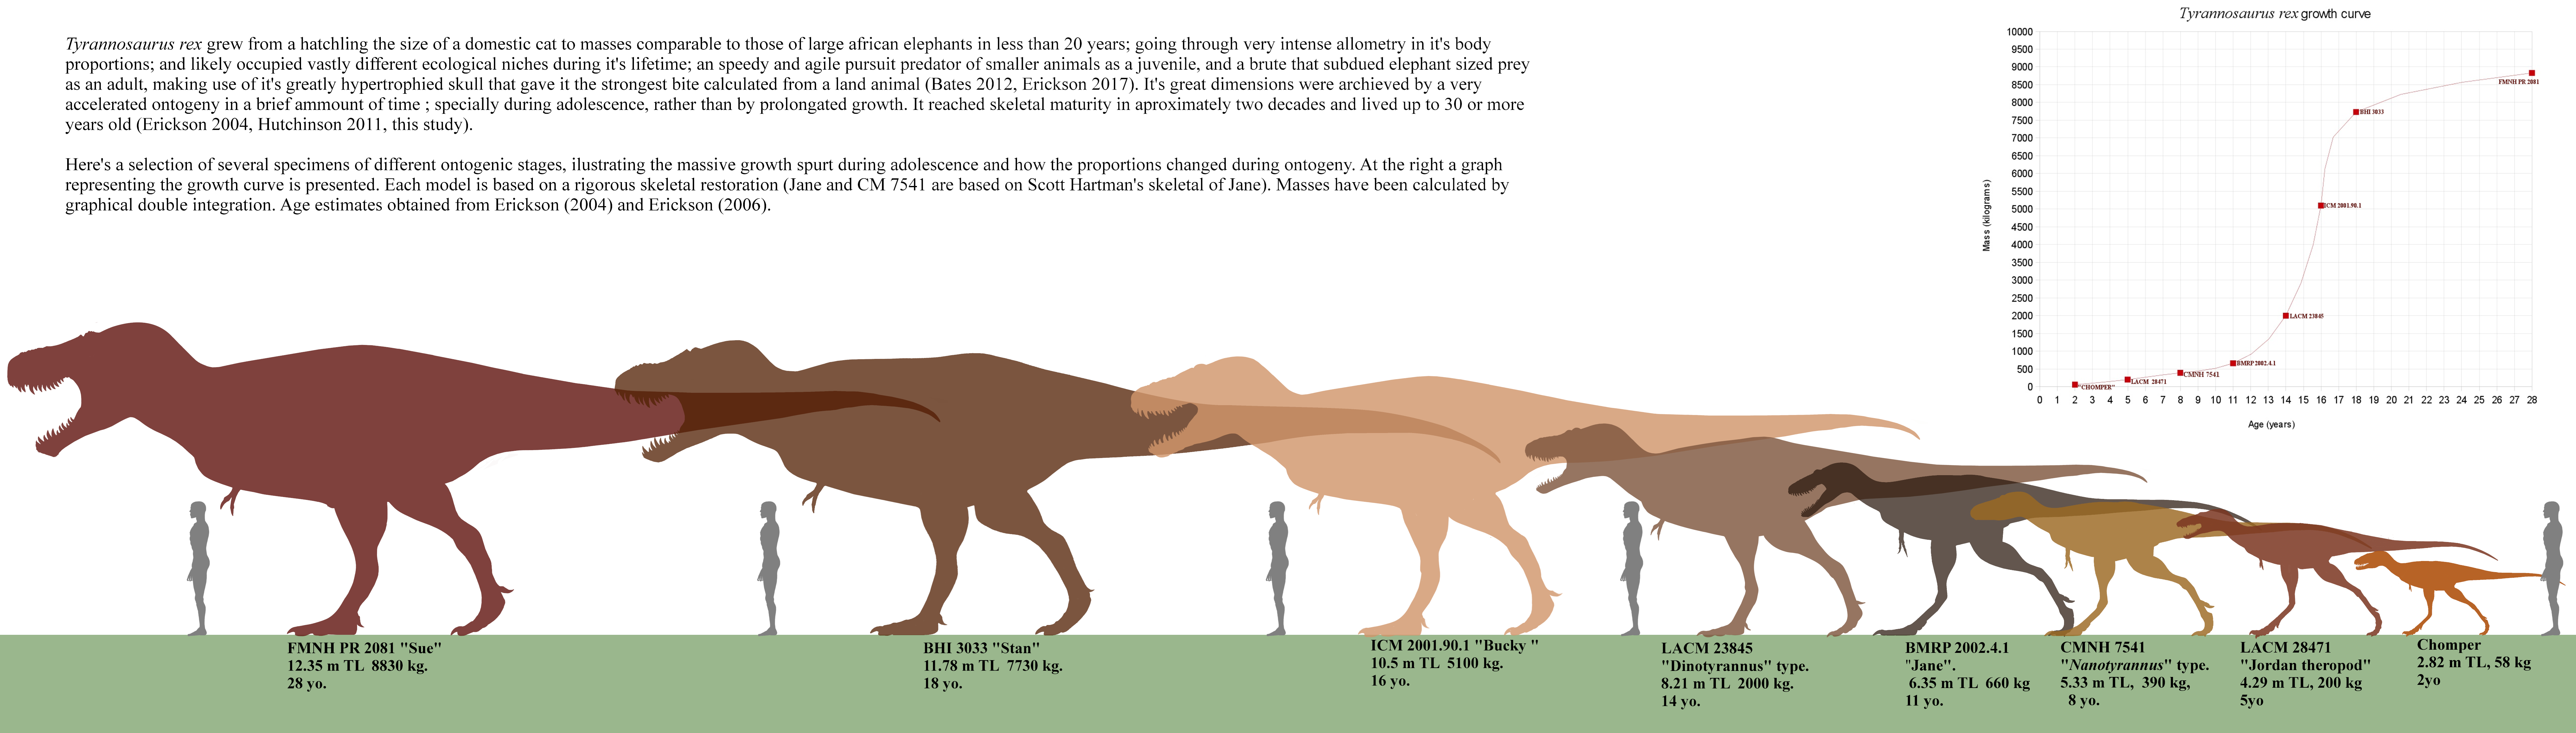 tiranosaurio - Tyrannosaurus rex - Página 5 Da3k5zl-0dc1dc90-b0e3-49cd-8358-32d758ab63ea.png?token=eyJ0eXAiOiJKV1QiLCJhbGciOiJIUzI1NiJ9.eyJzdWIiOiJ1cm46YXBwOjdlMGQxODg5ODIyNjQzNzNhNWYwZDQxNWVhMGQyNmUwIiwiaXNzIjoidXJuOmFwcDo3ZTBkMTg4OTgyMjY0MzczYTVmMGQ0MTVlYTBkMjZlMCIsIm9iaiI6W1t7InBhdGgiOiJcL2ZcL2ViZmNlZjZiLTc2ZWMtNDU3Mi05ODFlLTI2ZmJlNGIyN2ZhYlwvZGEzazV6bC0wZGMxZGM5MC1iMGUzLTQ5Y2QtODM1OC0zMmQ3NThhYjYzZWEucG5nIn1dXSwiYXVkIjpbInVybjpzZXJ2aWNlOmZpbGUuZG93bmxvYWQiXX0